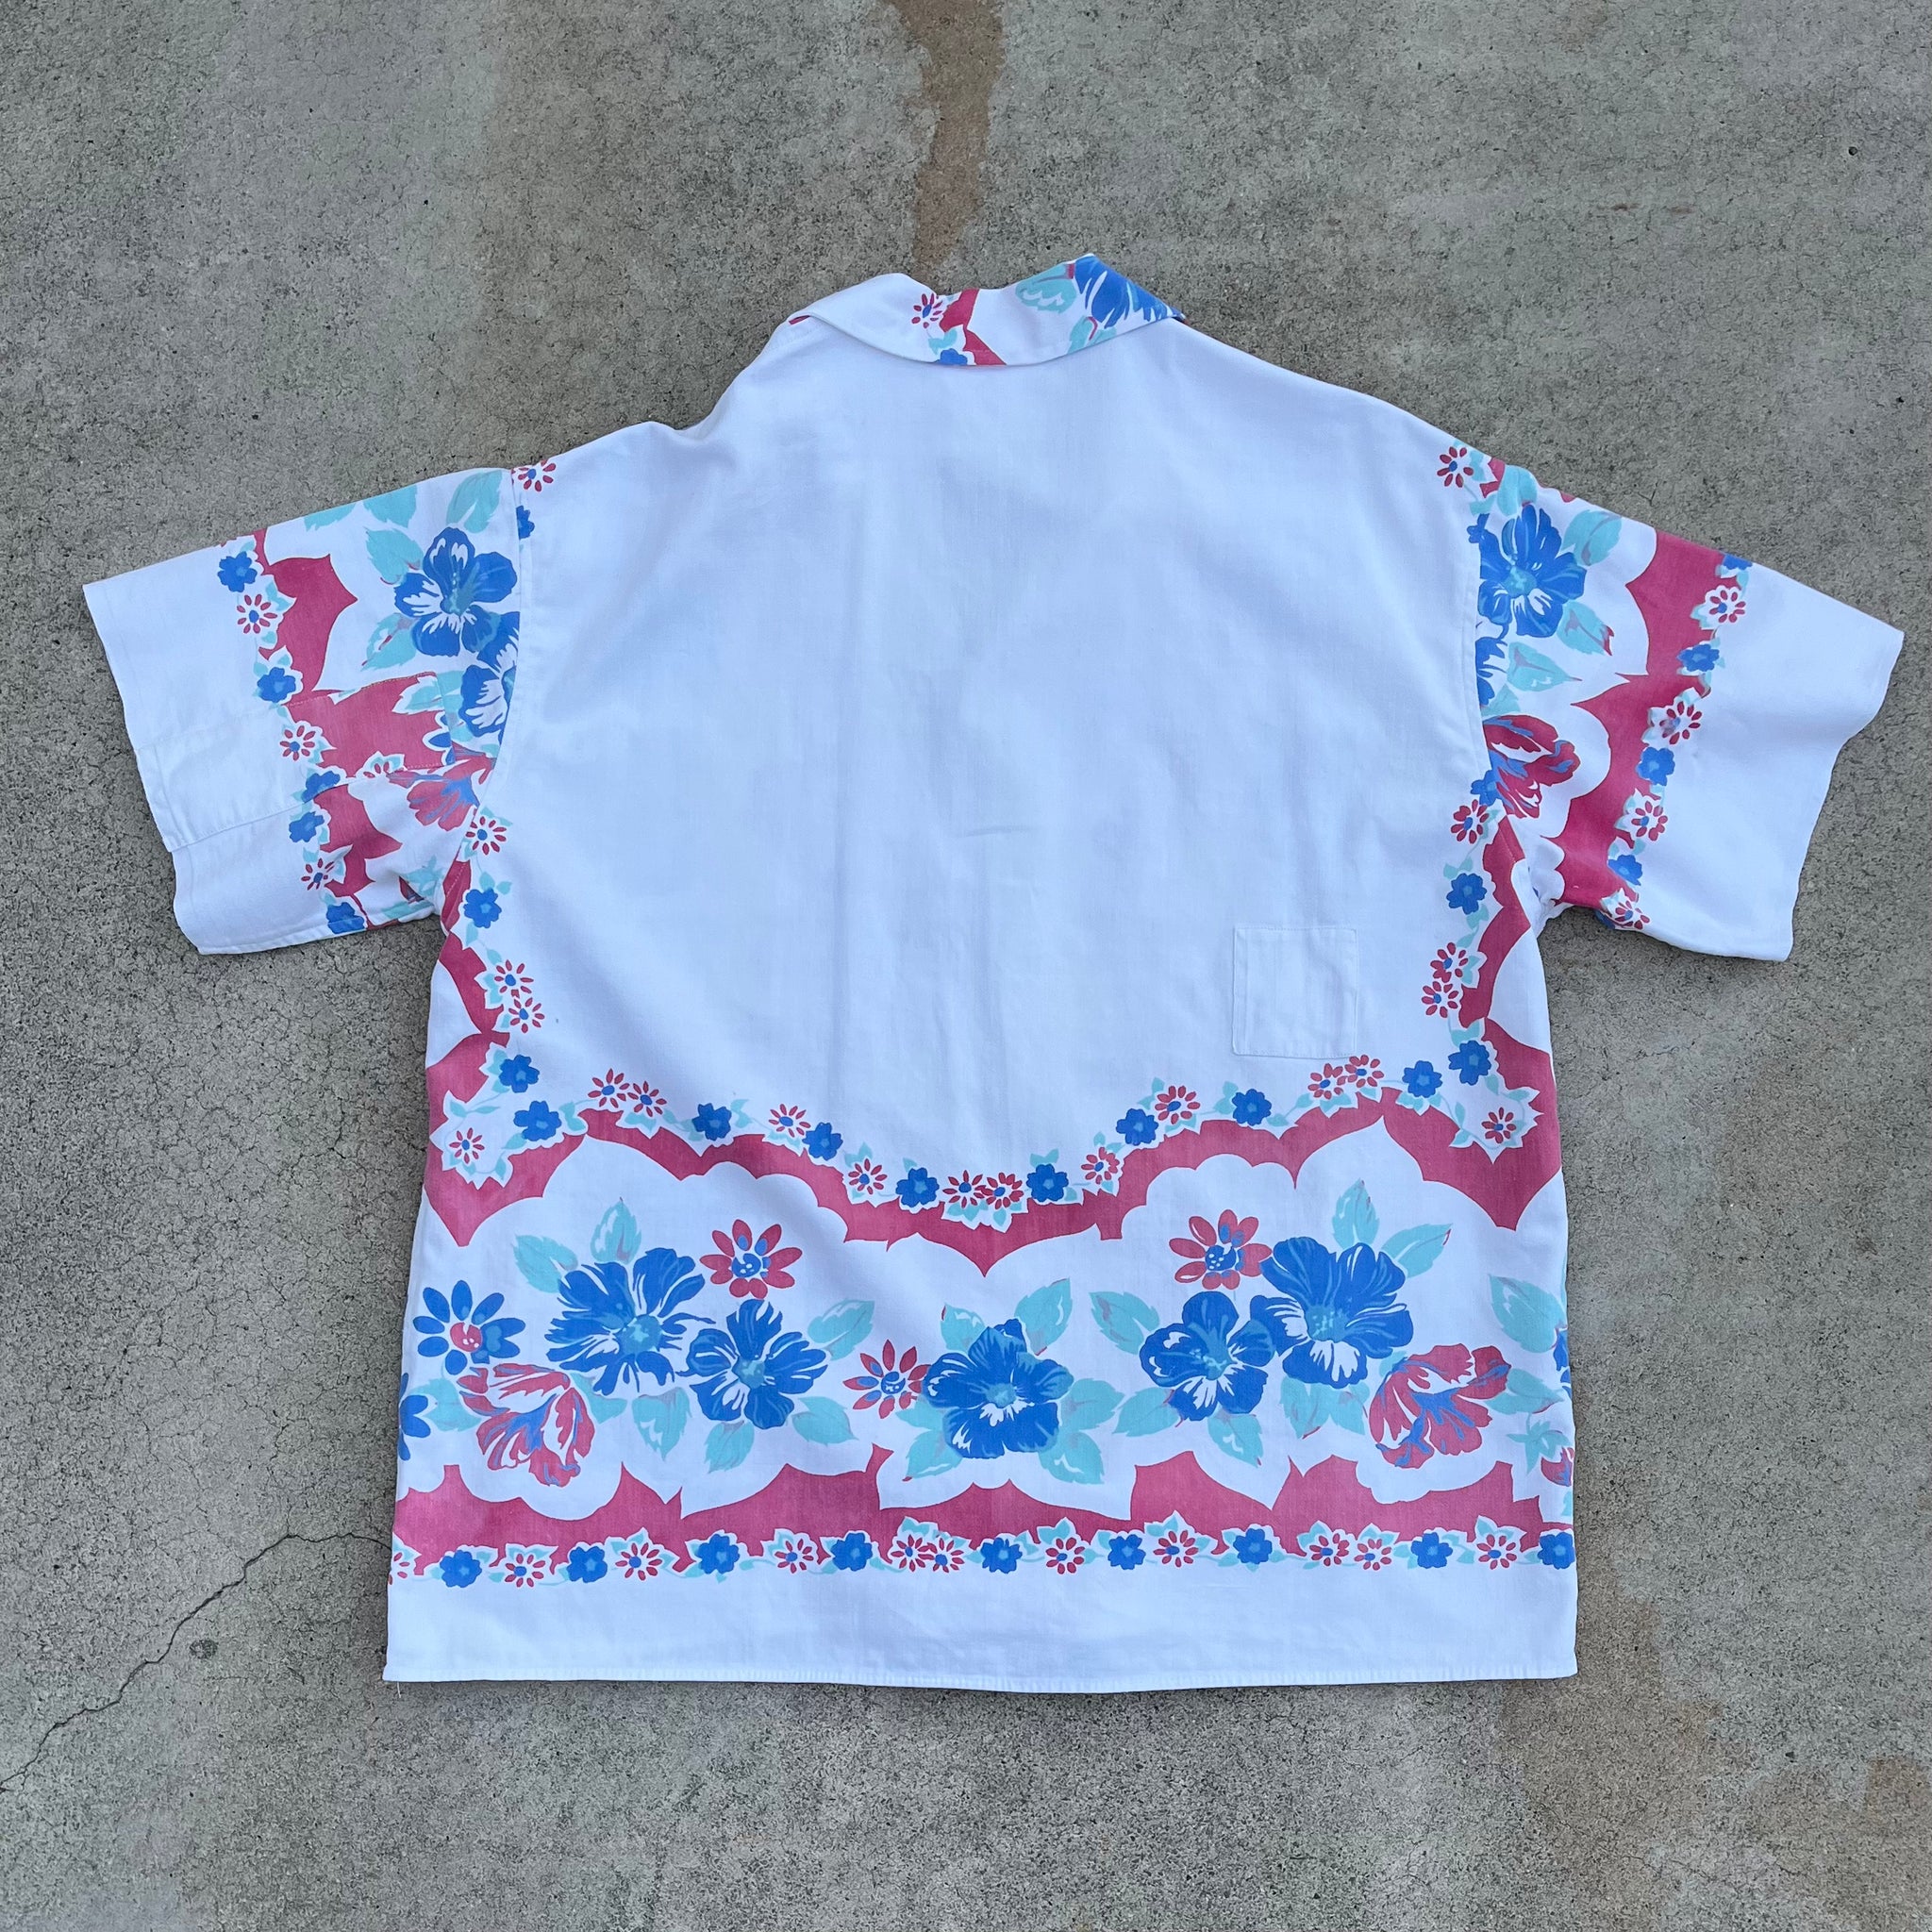 L/XL Tablecloth Shirt - Spring Garden